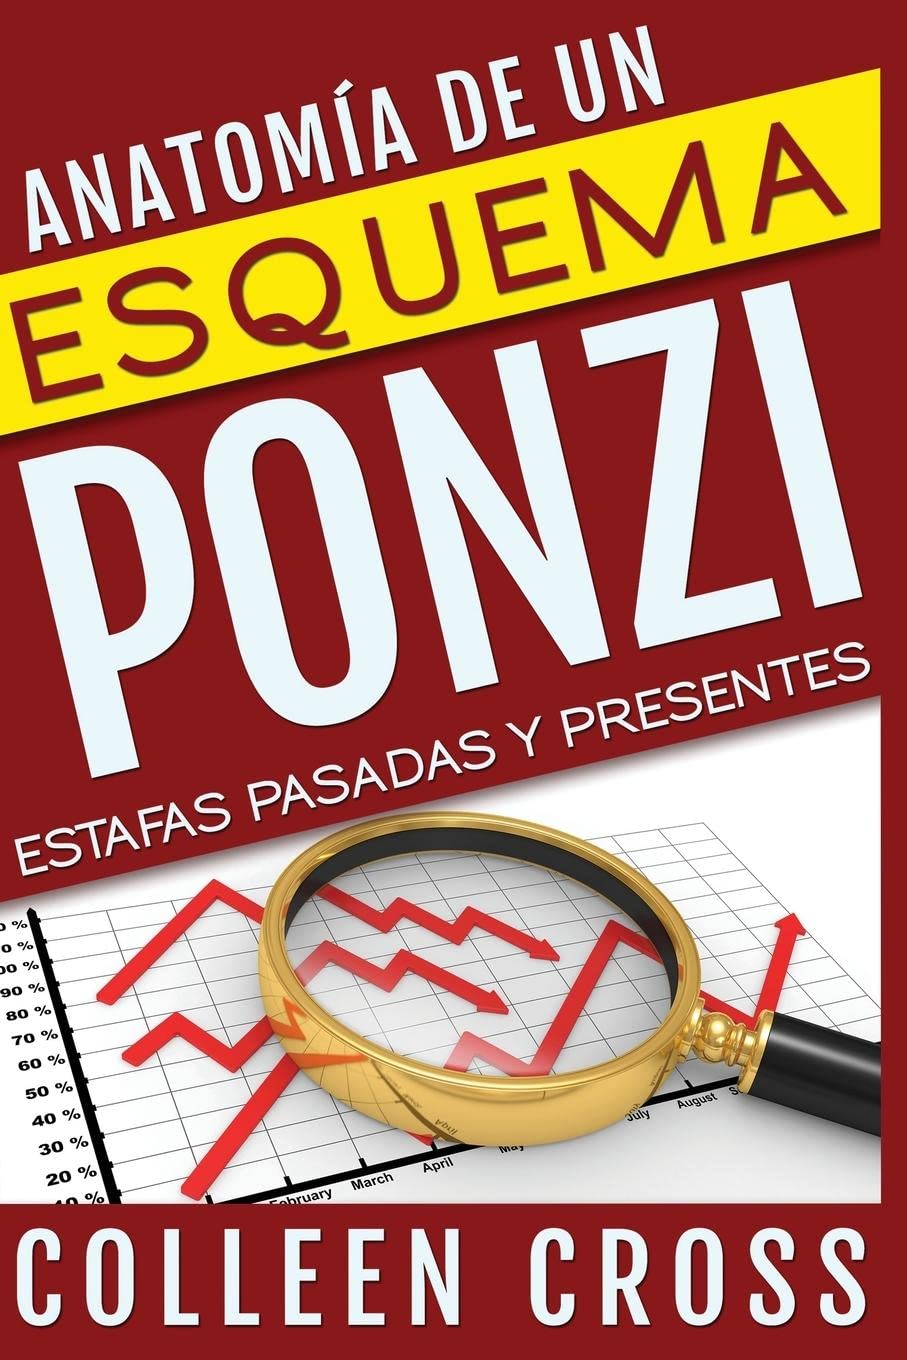 Anatomía de un esquema Ponzi Estafas pasadas y presentes - SureShot Books Publishing LLC